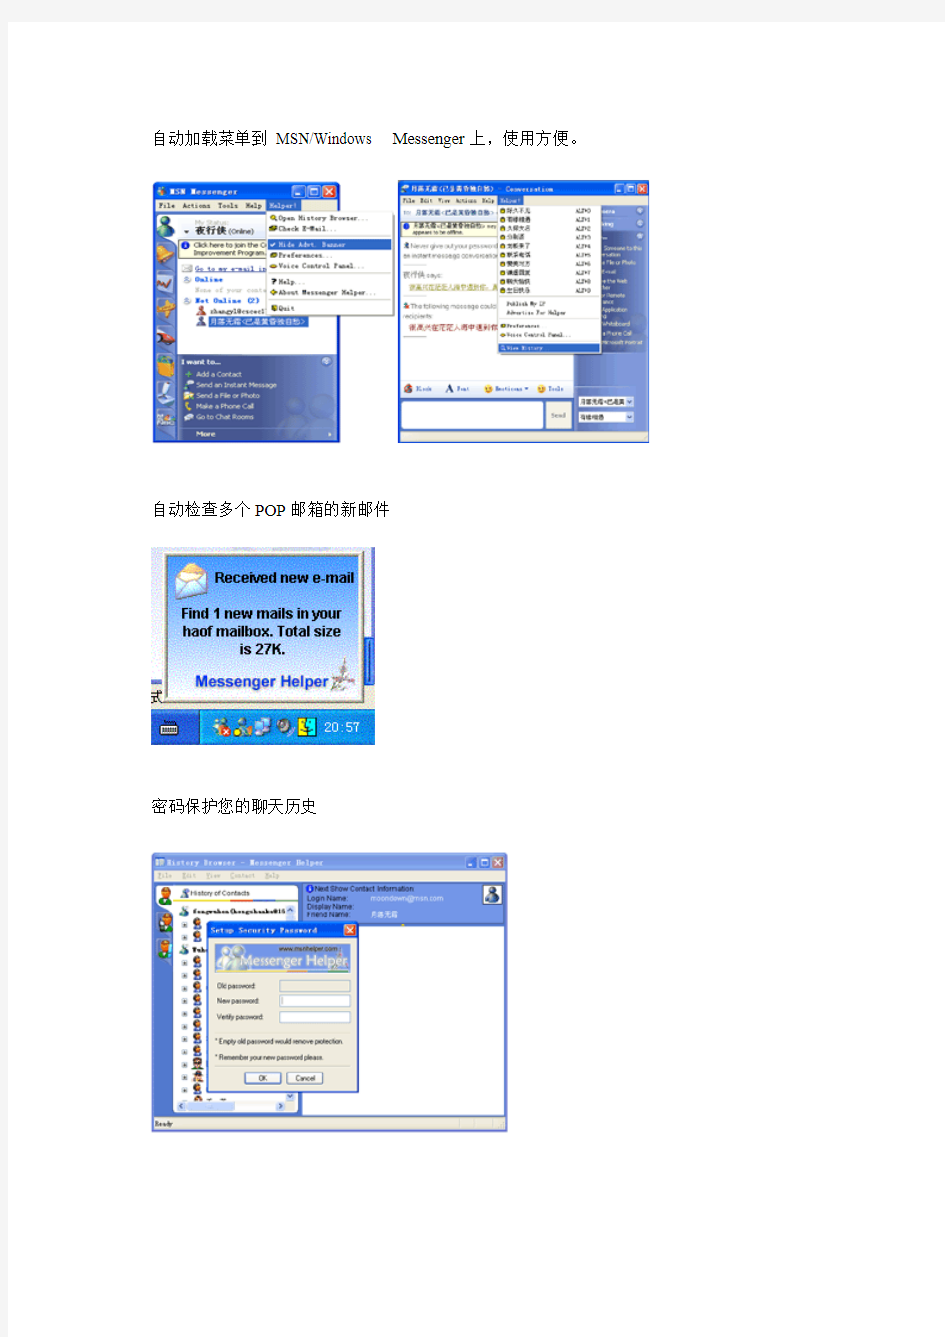 Messenger Helper for MSN Messenger 功能特性